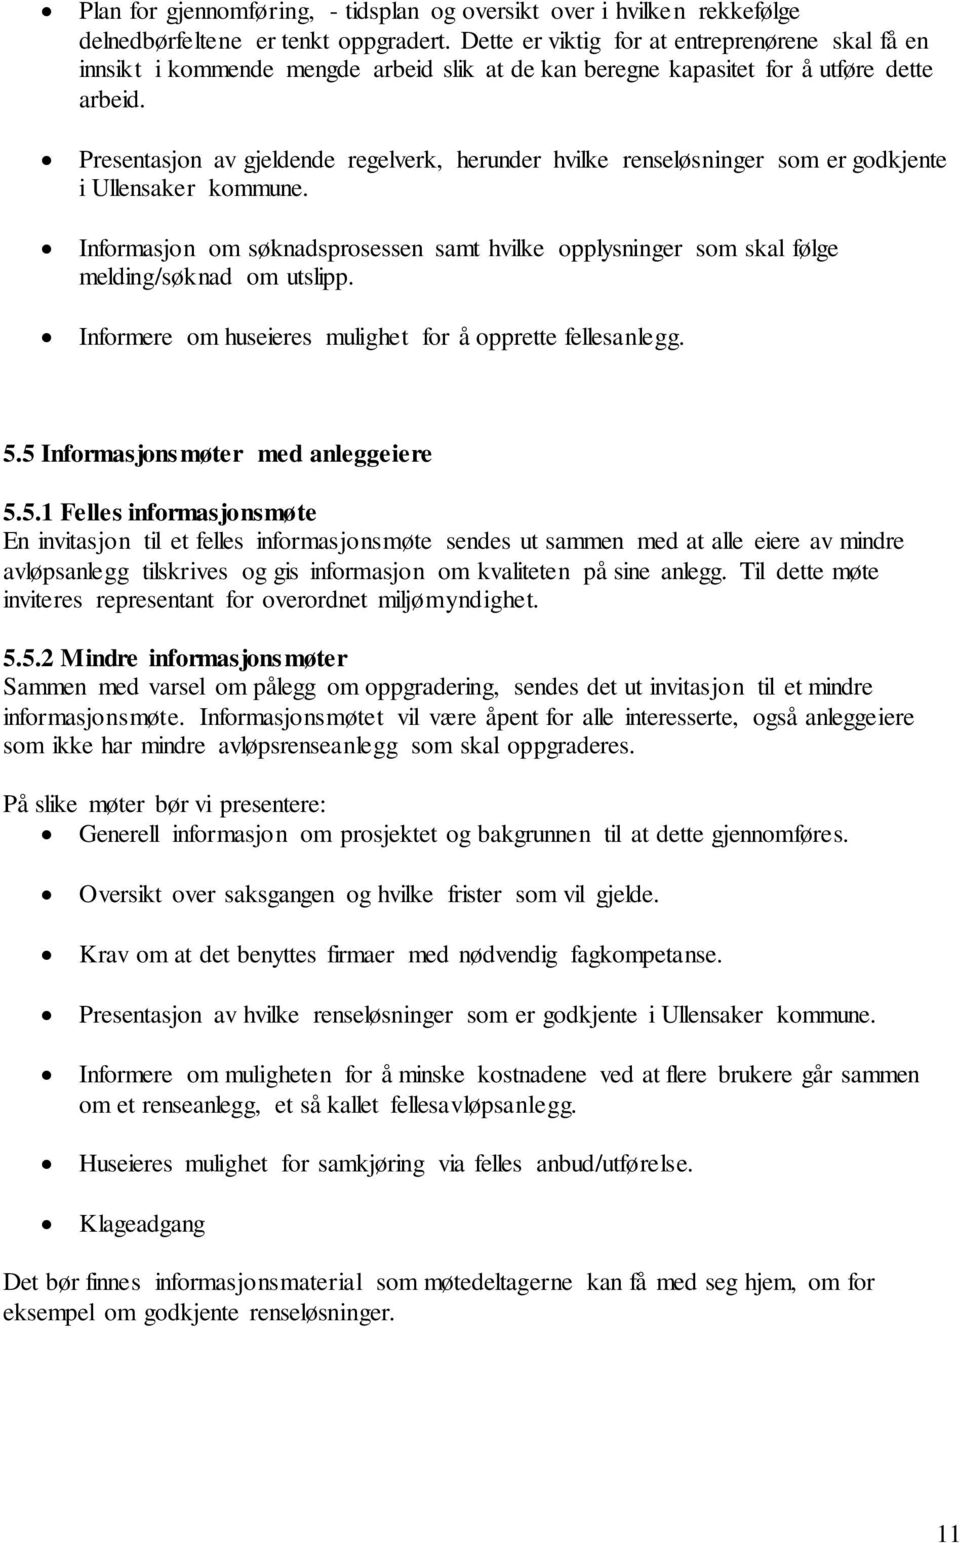 Presentasjon av gjeldende regelverk, herunder hvilke renseløsninger som er godkjente i Ullensaker kommune.